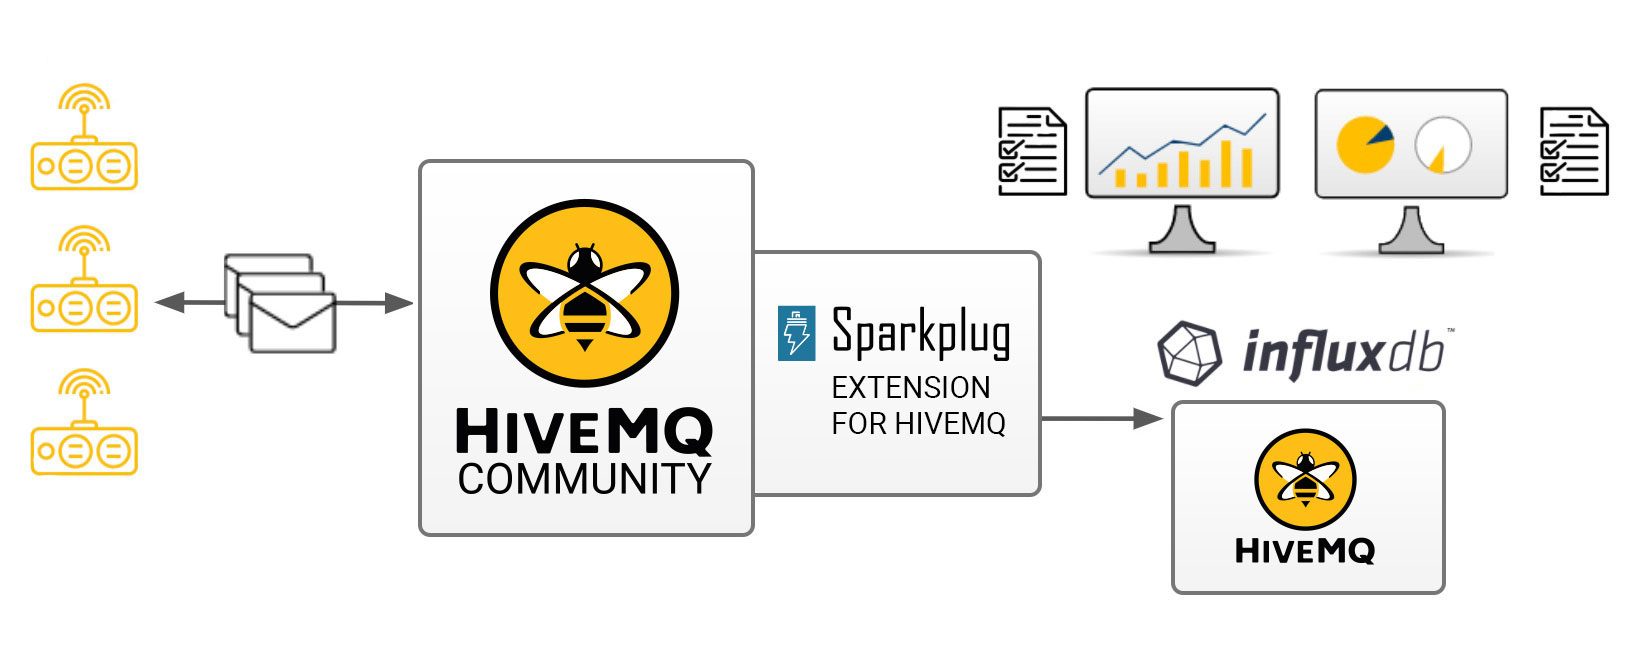 HiveMQ, InfluxDB and Sparkplug